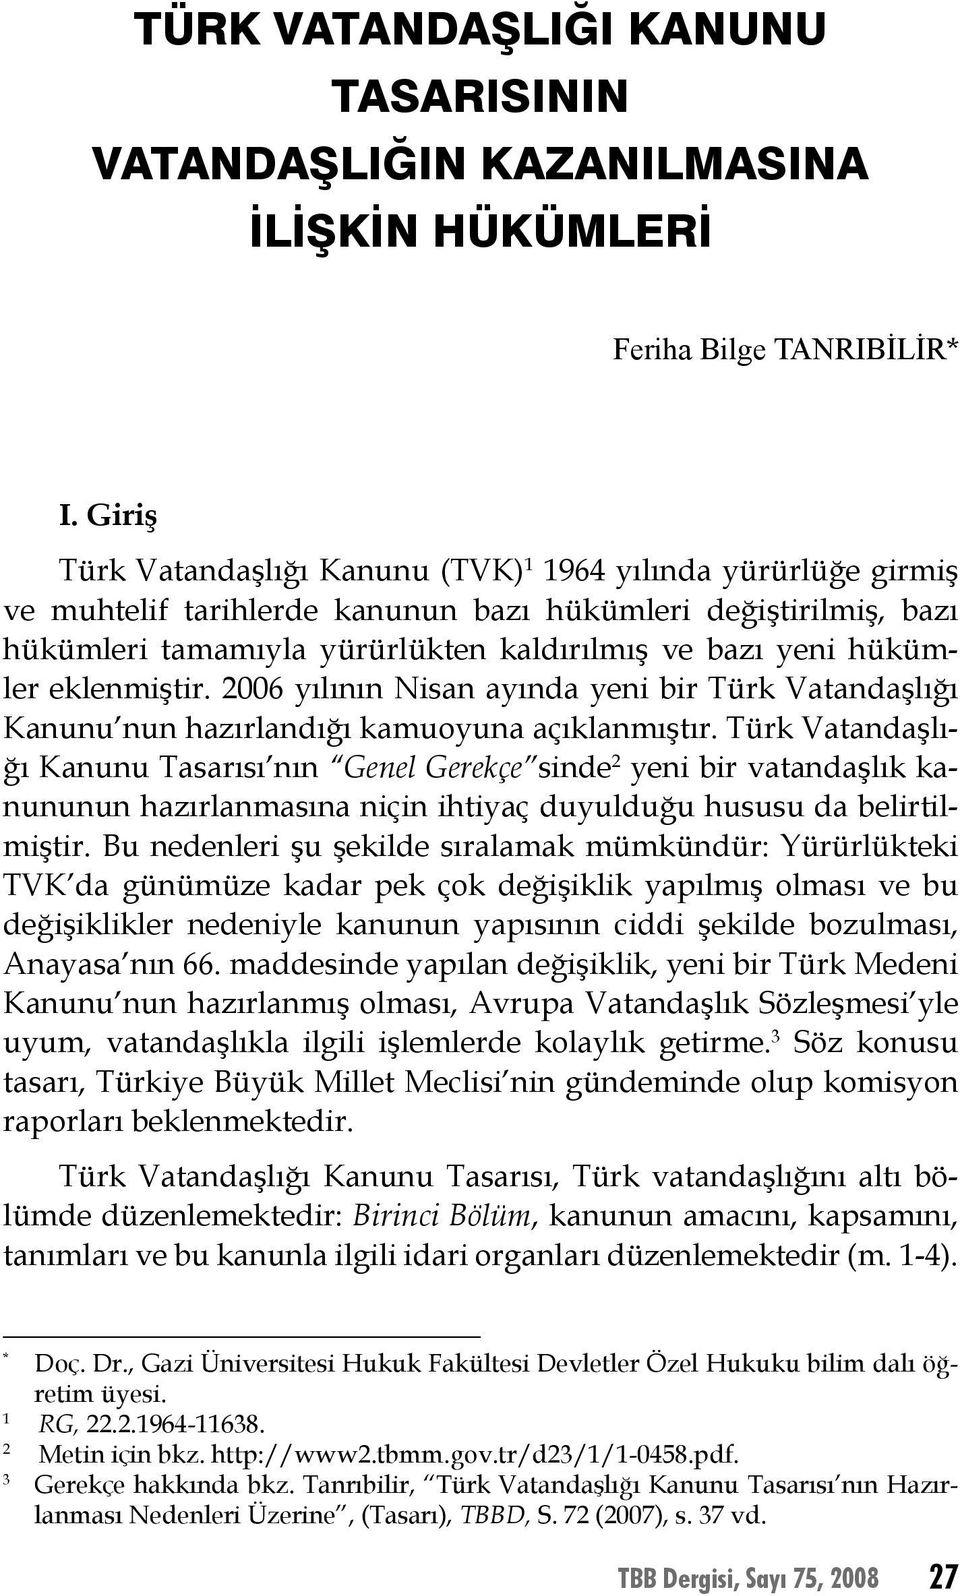 eklenmiştir. 2006 yılının Nisan ayında yeni bir Türk Vatandaşlığı Kanunu nun hazırlandığı kamuoyuna açıklanmıştır.